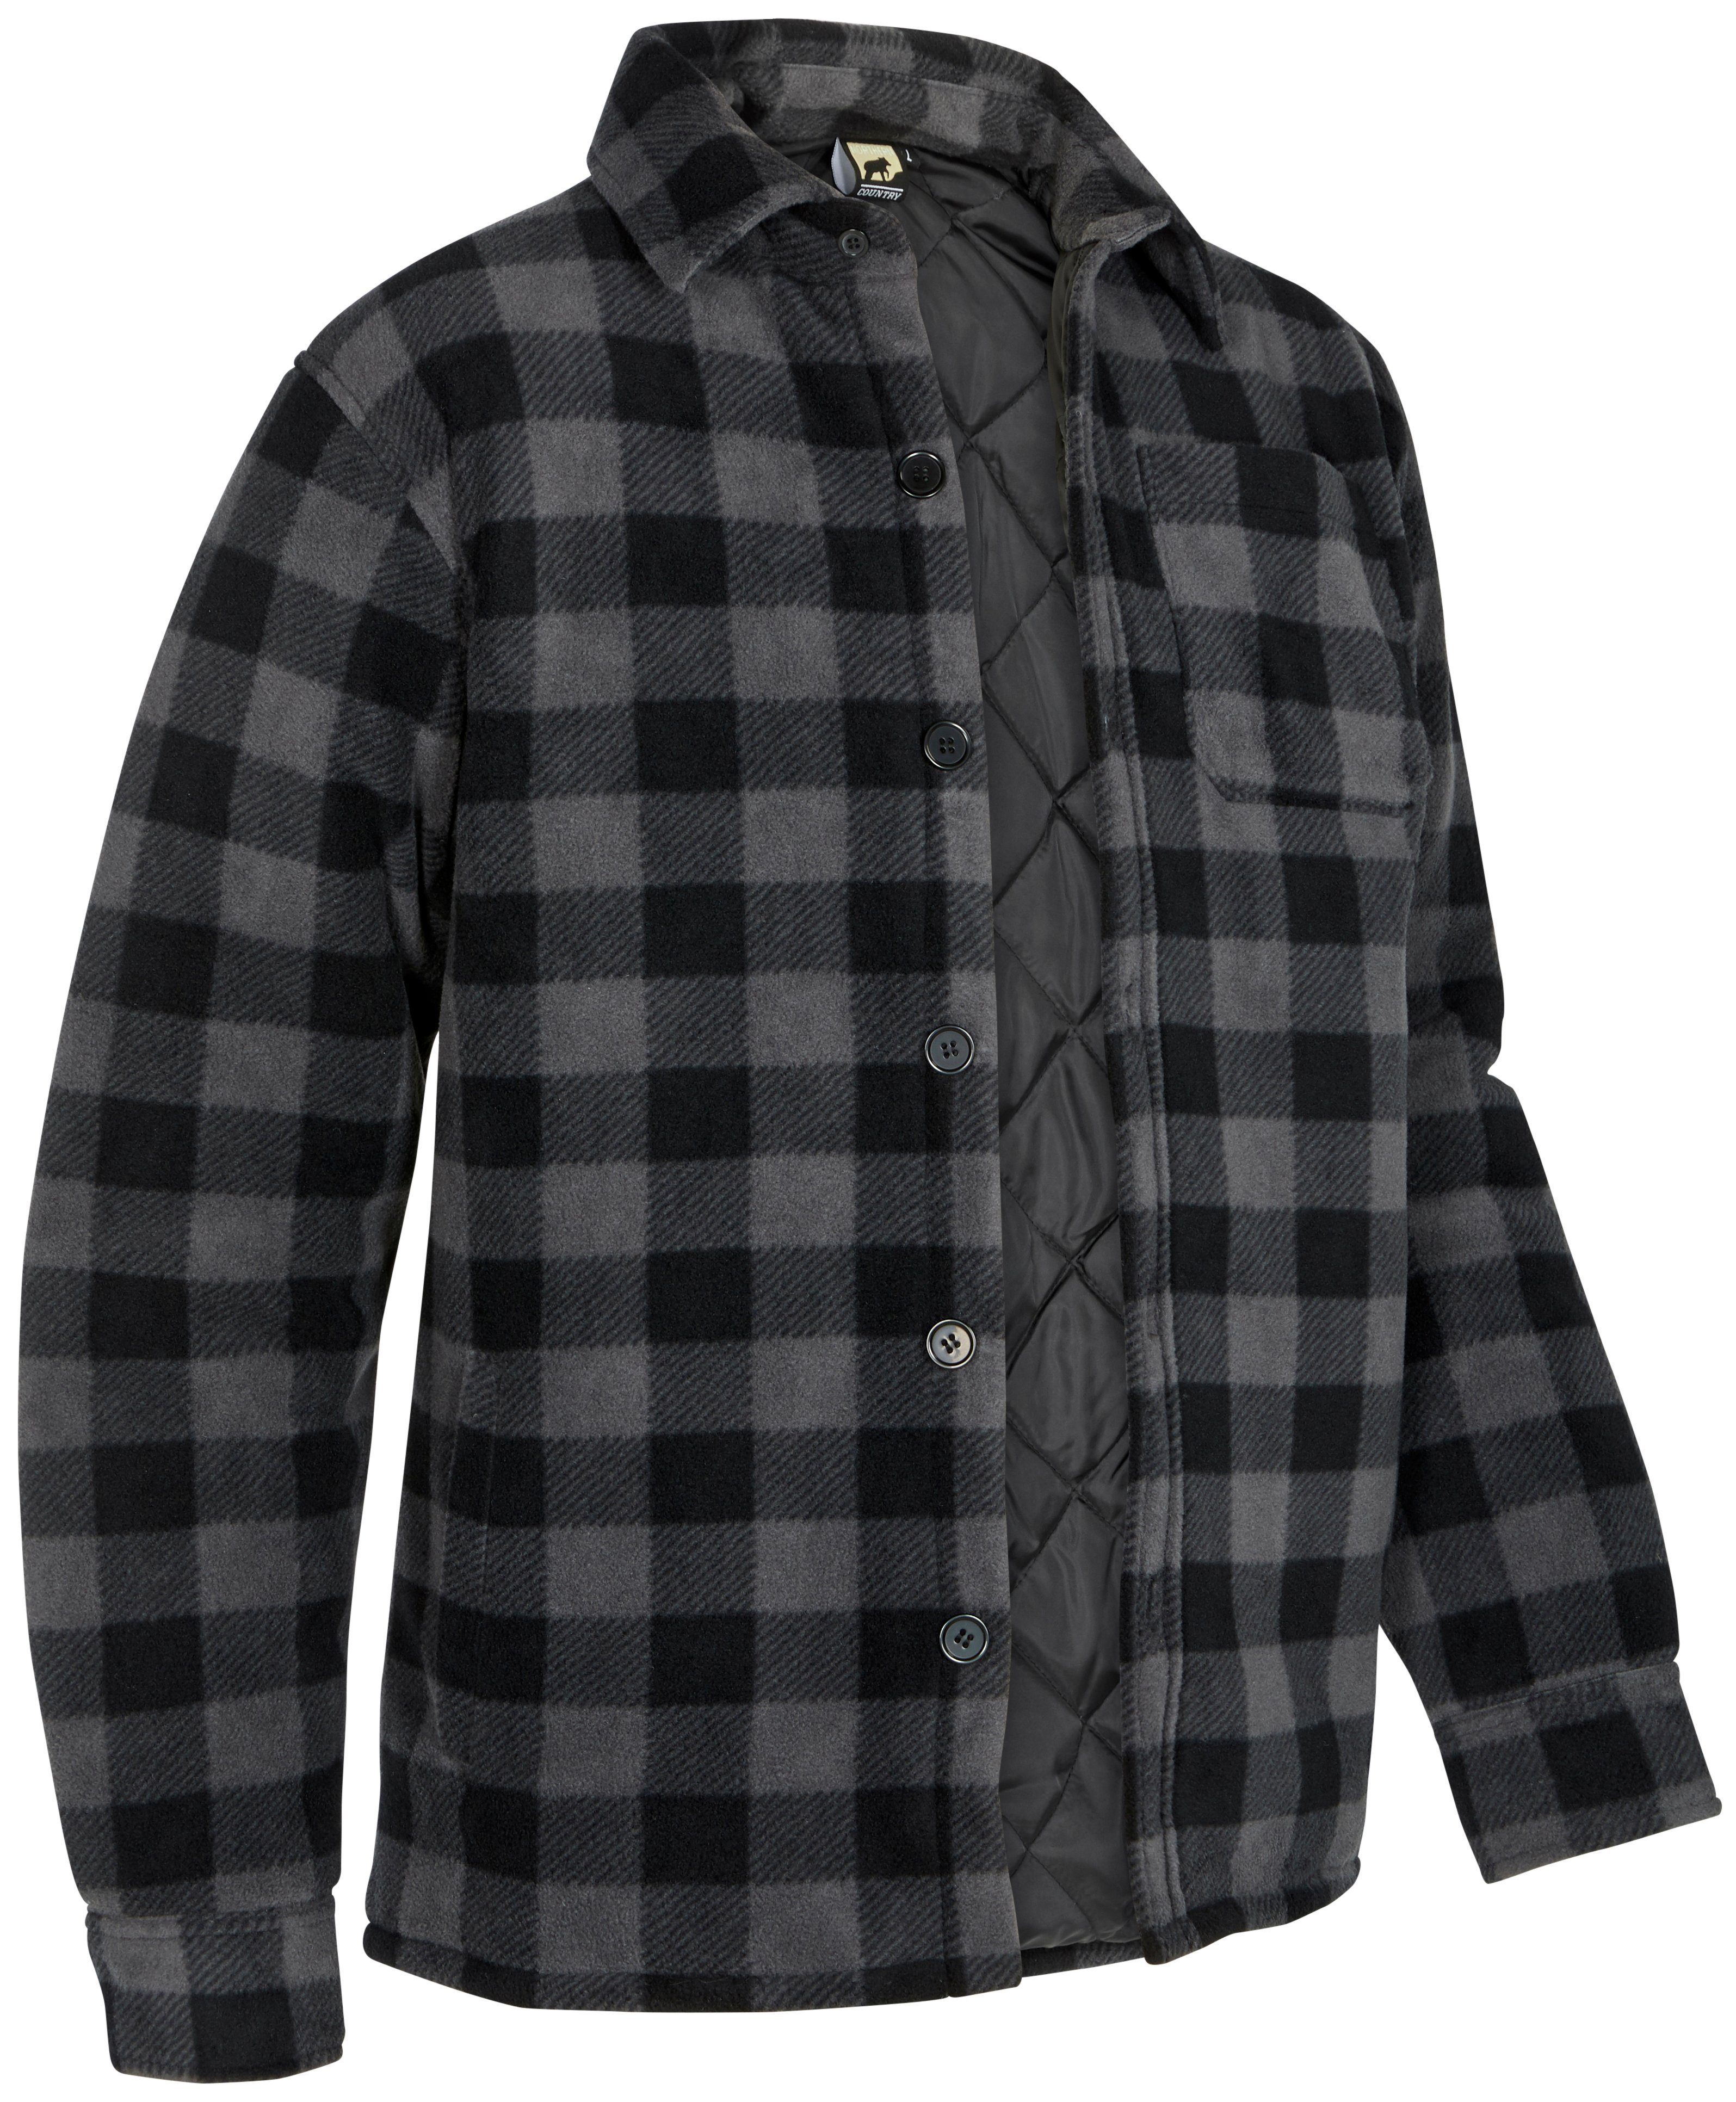 Northern Country Flanellhemd (als Jacke offen oder Hemd zugeknöpft zu tragen) warm gefüttert, mit 5 Taschen, mit verlängertem Rücken, Flanellstoff grau-schwarz | Freizeithemden